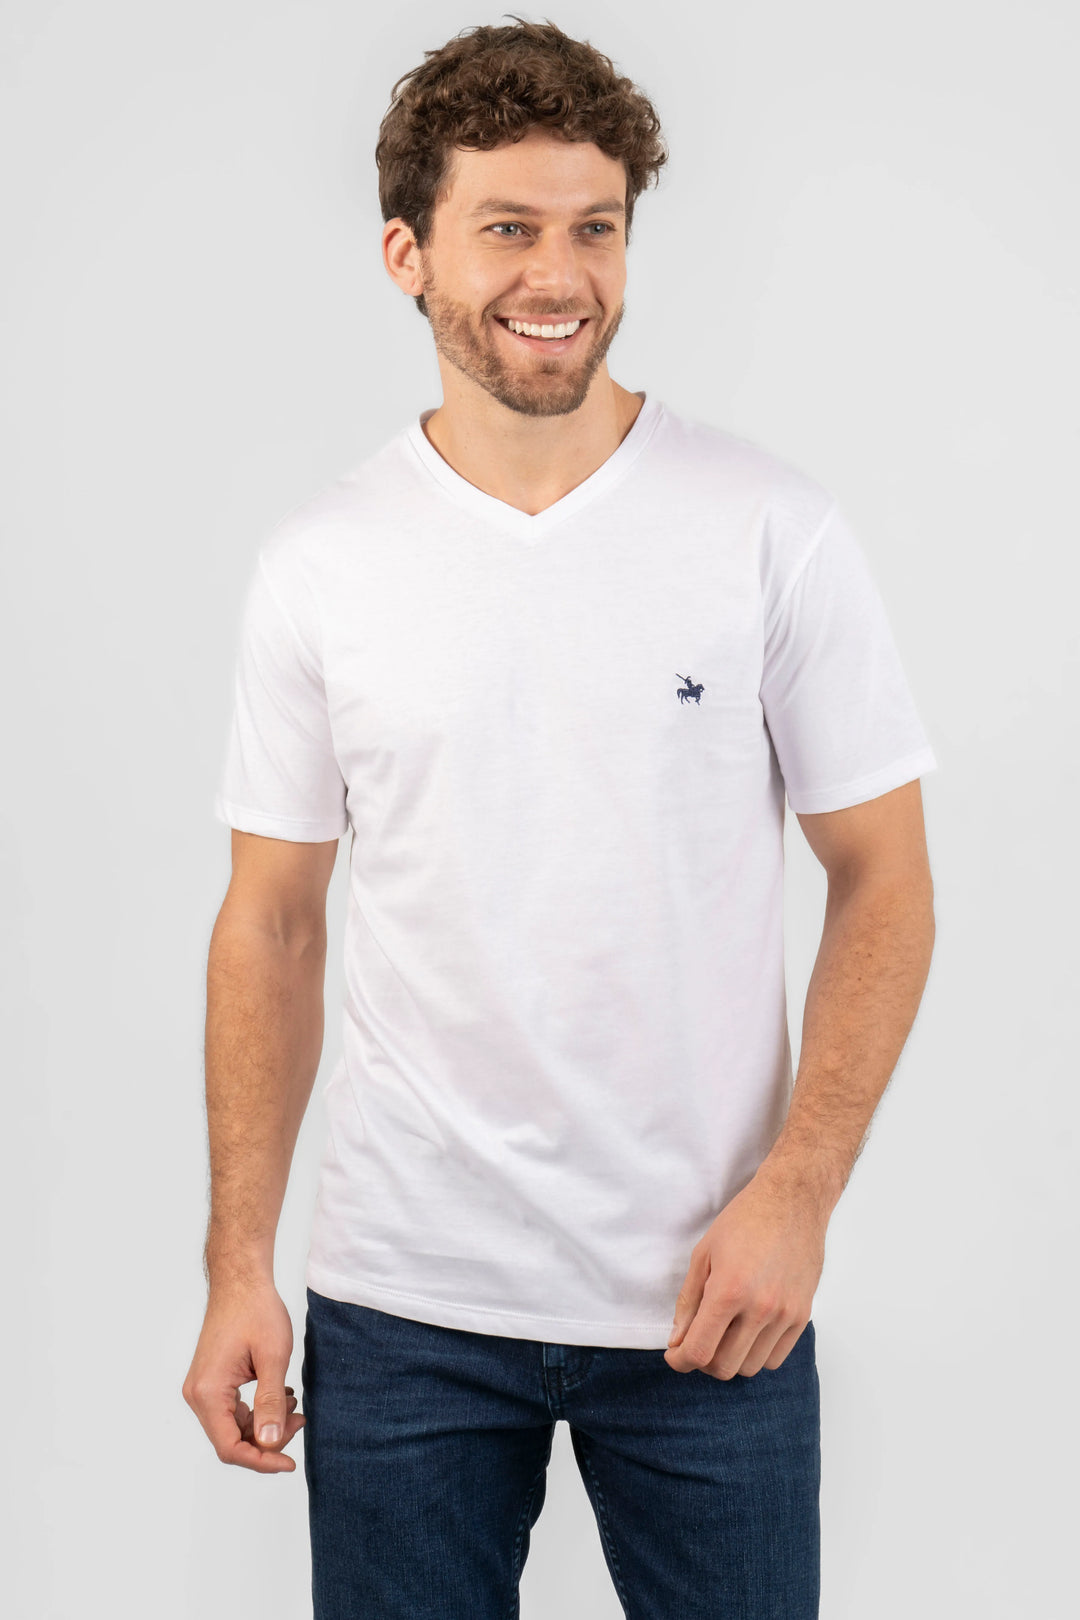 Camiseta blanca para hombre cuello en V, un básico infaltable.